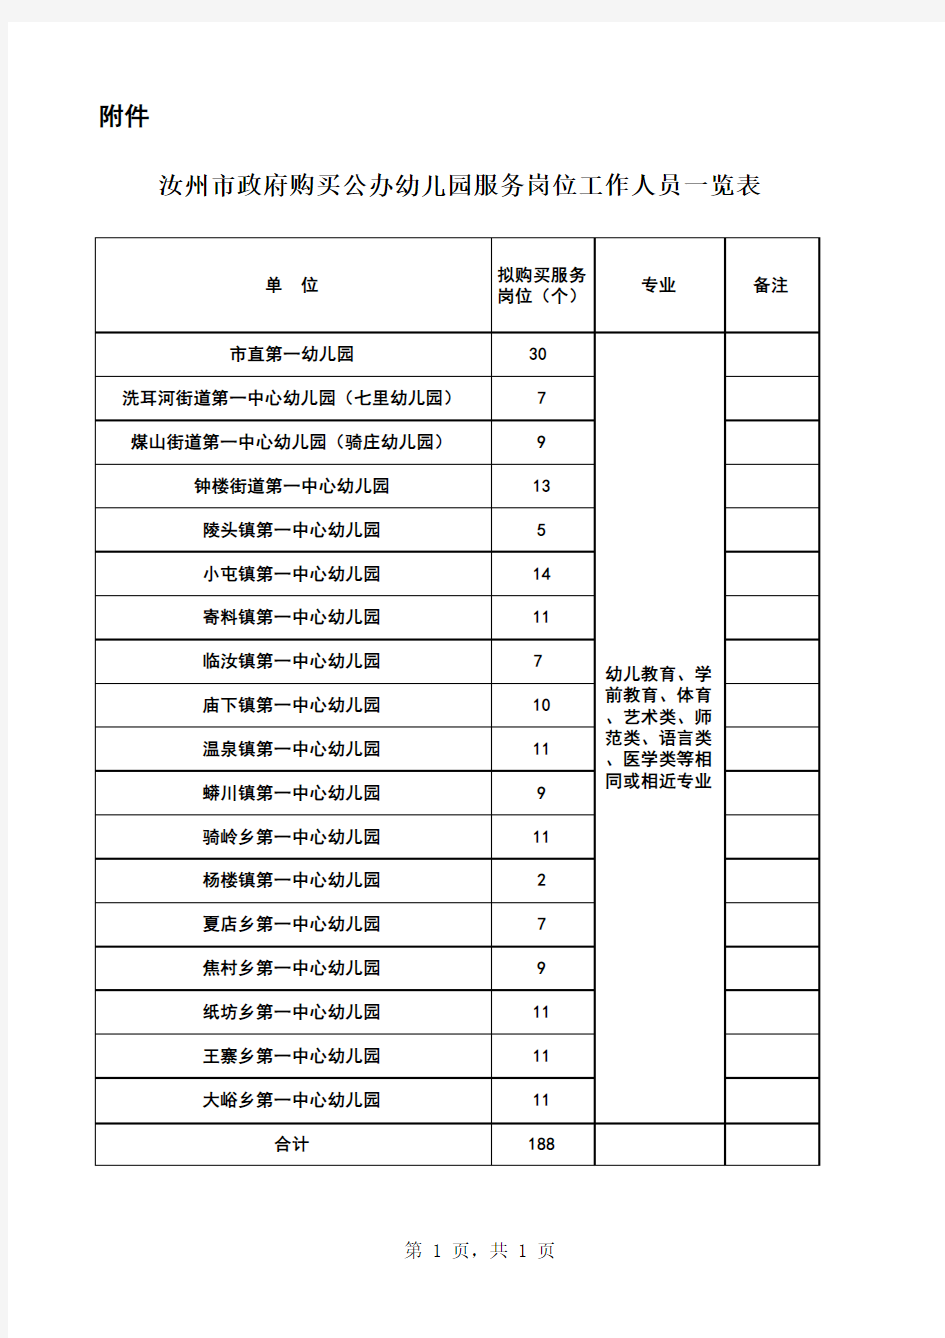 汝州市政府购买公办幼儿园服务岗位工作人员一览表